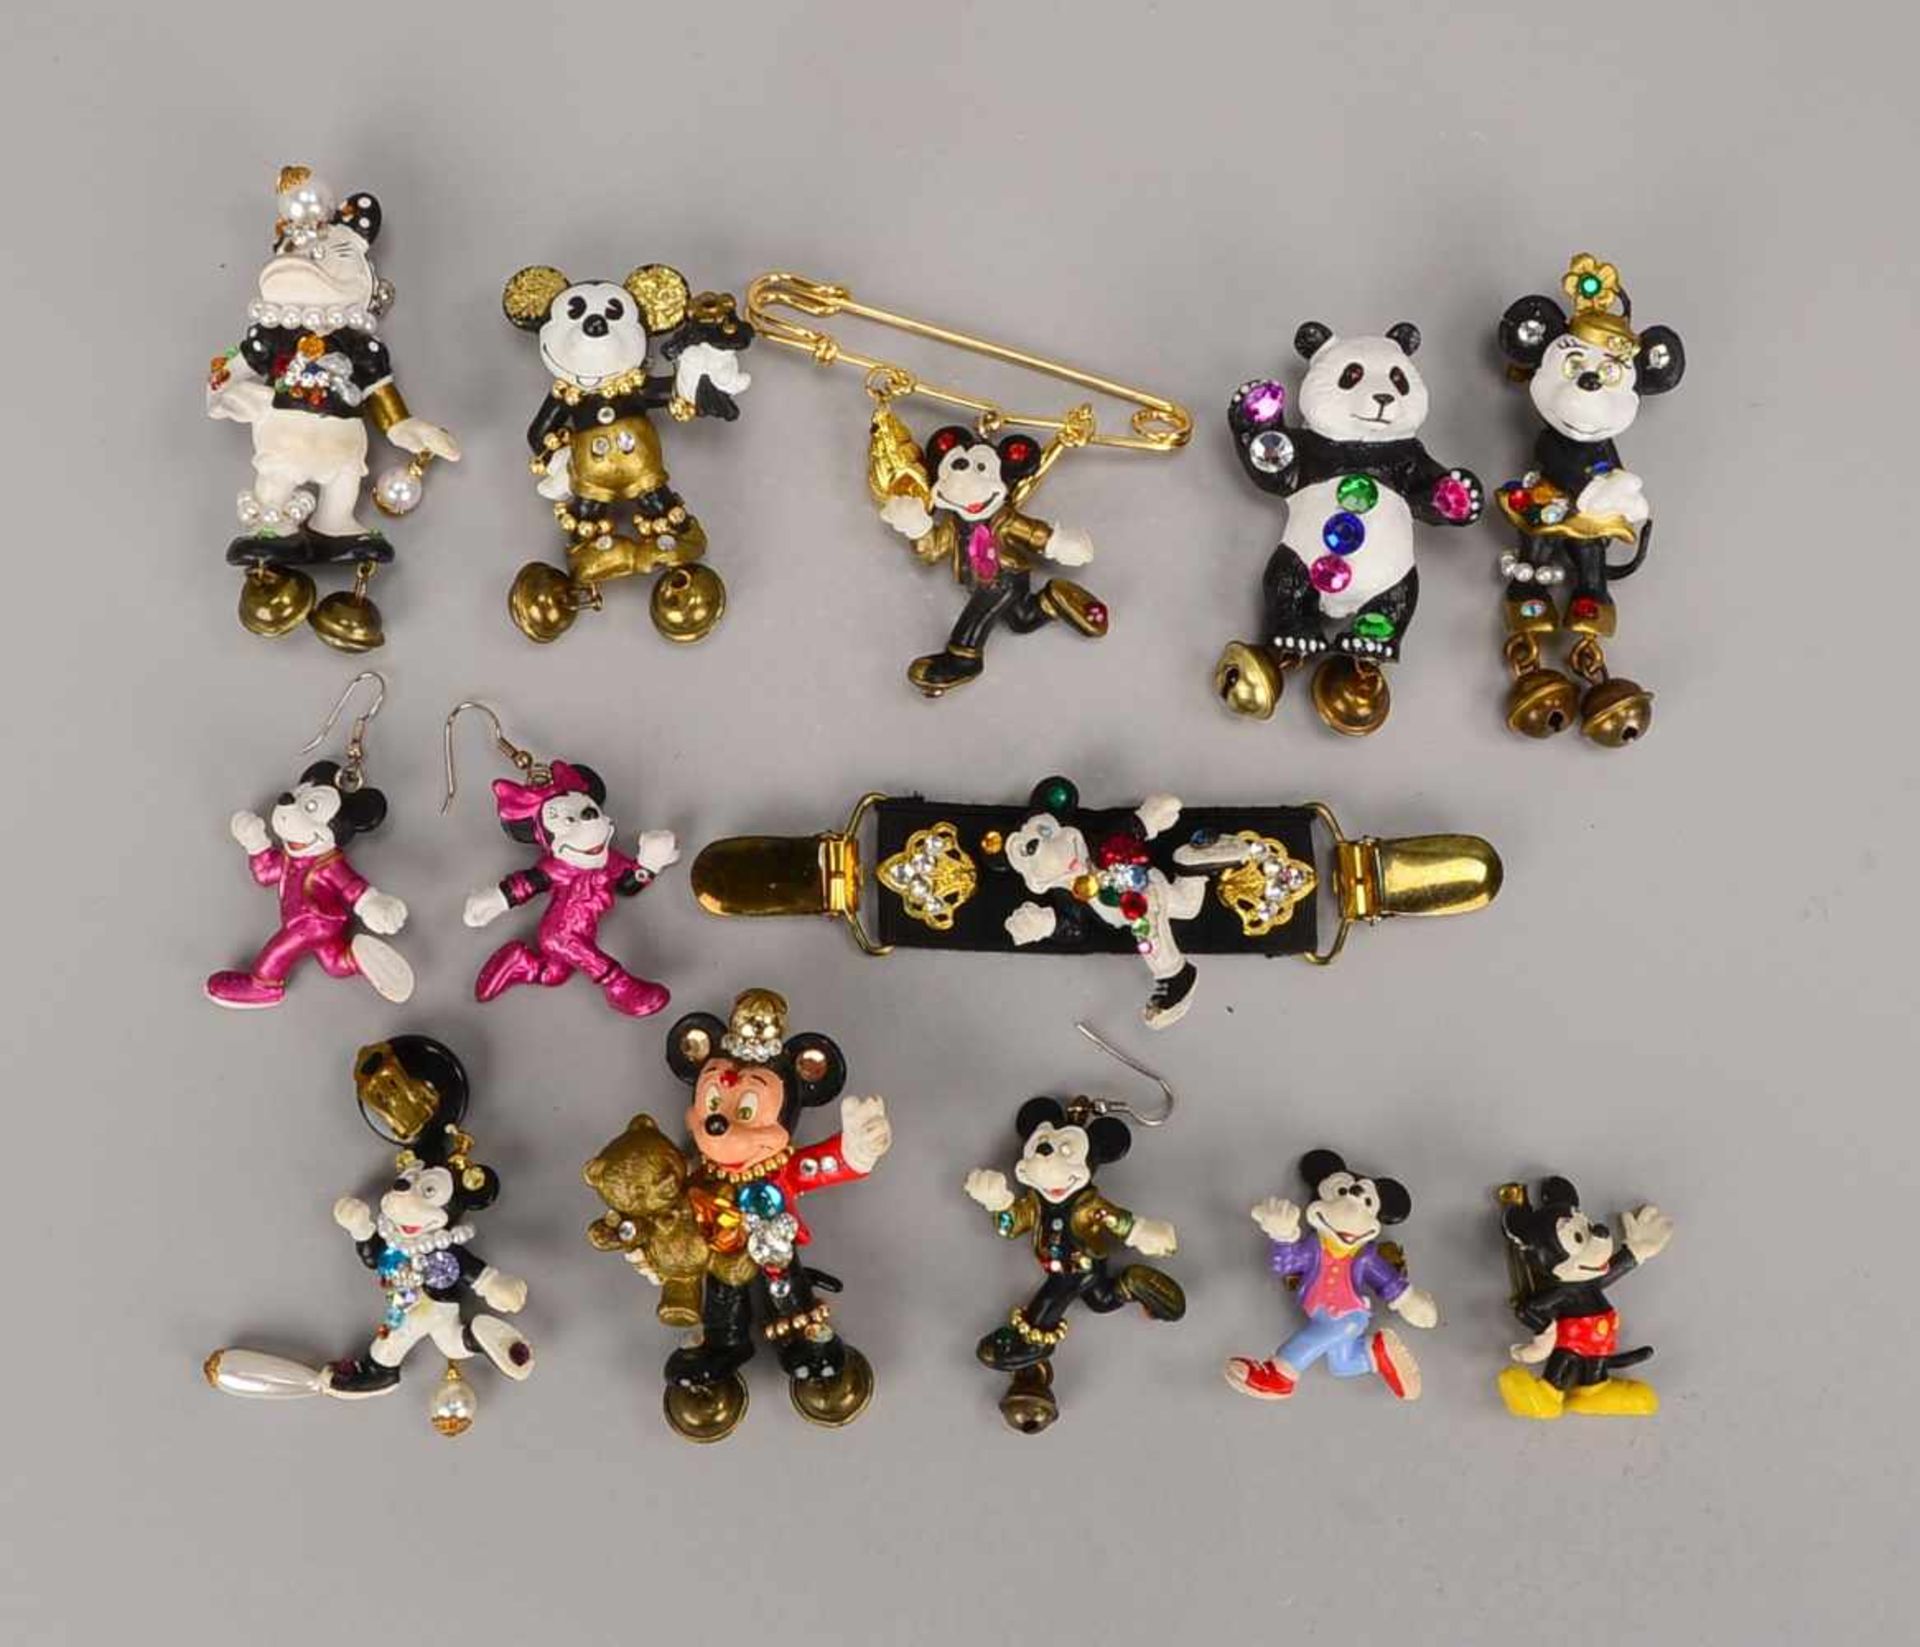 Kleine Figurensammlung, 'Mickey Mouse'/Walt Disney, 12 Stück (davon einzelne Figuren mit